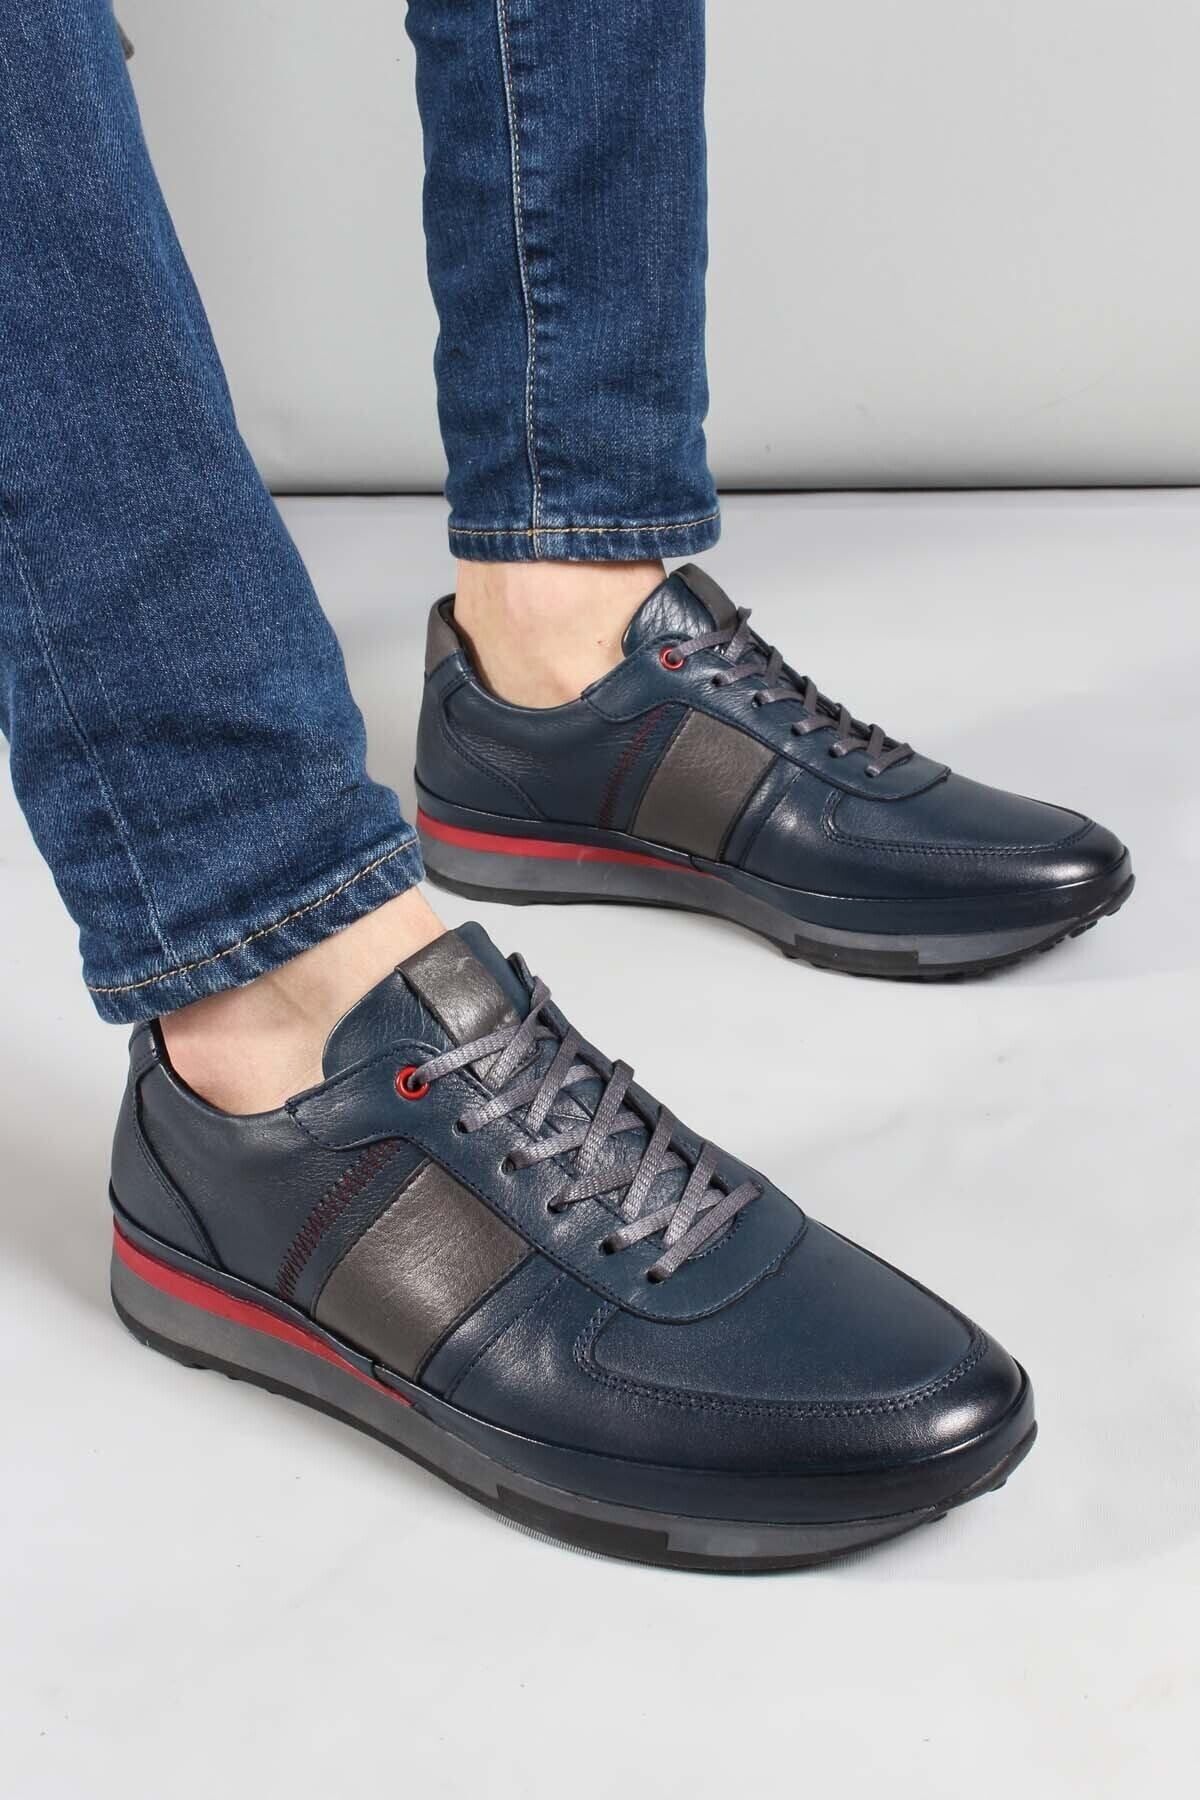 Fast Step Erkek Günlük Yürüyüş Sneaker Rahat Spor Hafif Casual Ayakkabı Lacivert 855ma1311